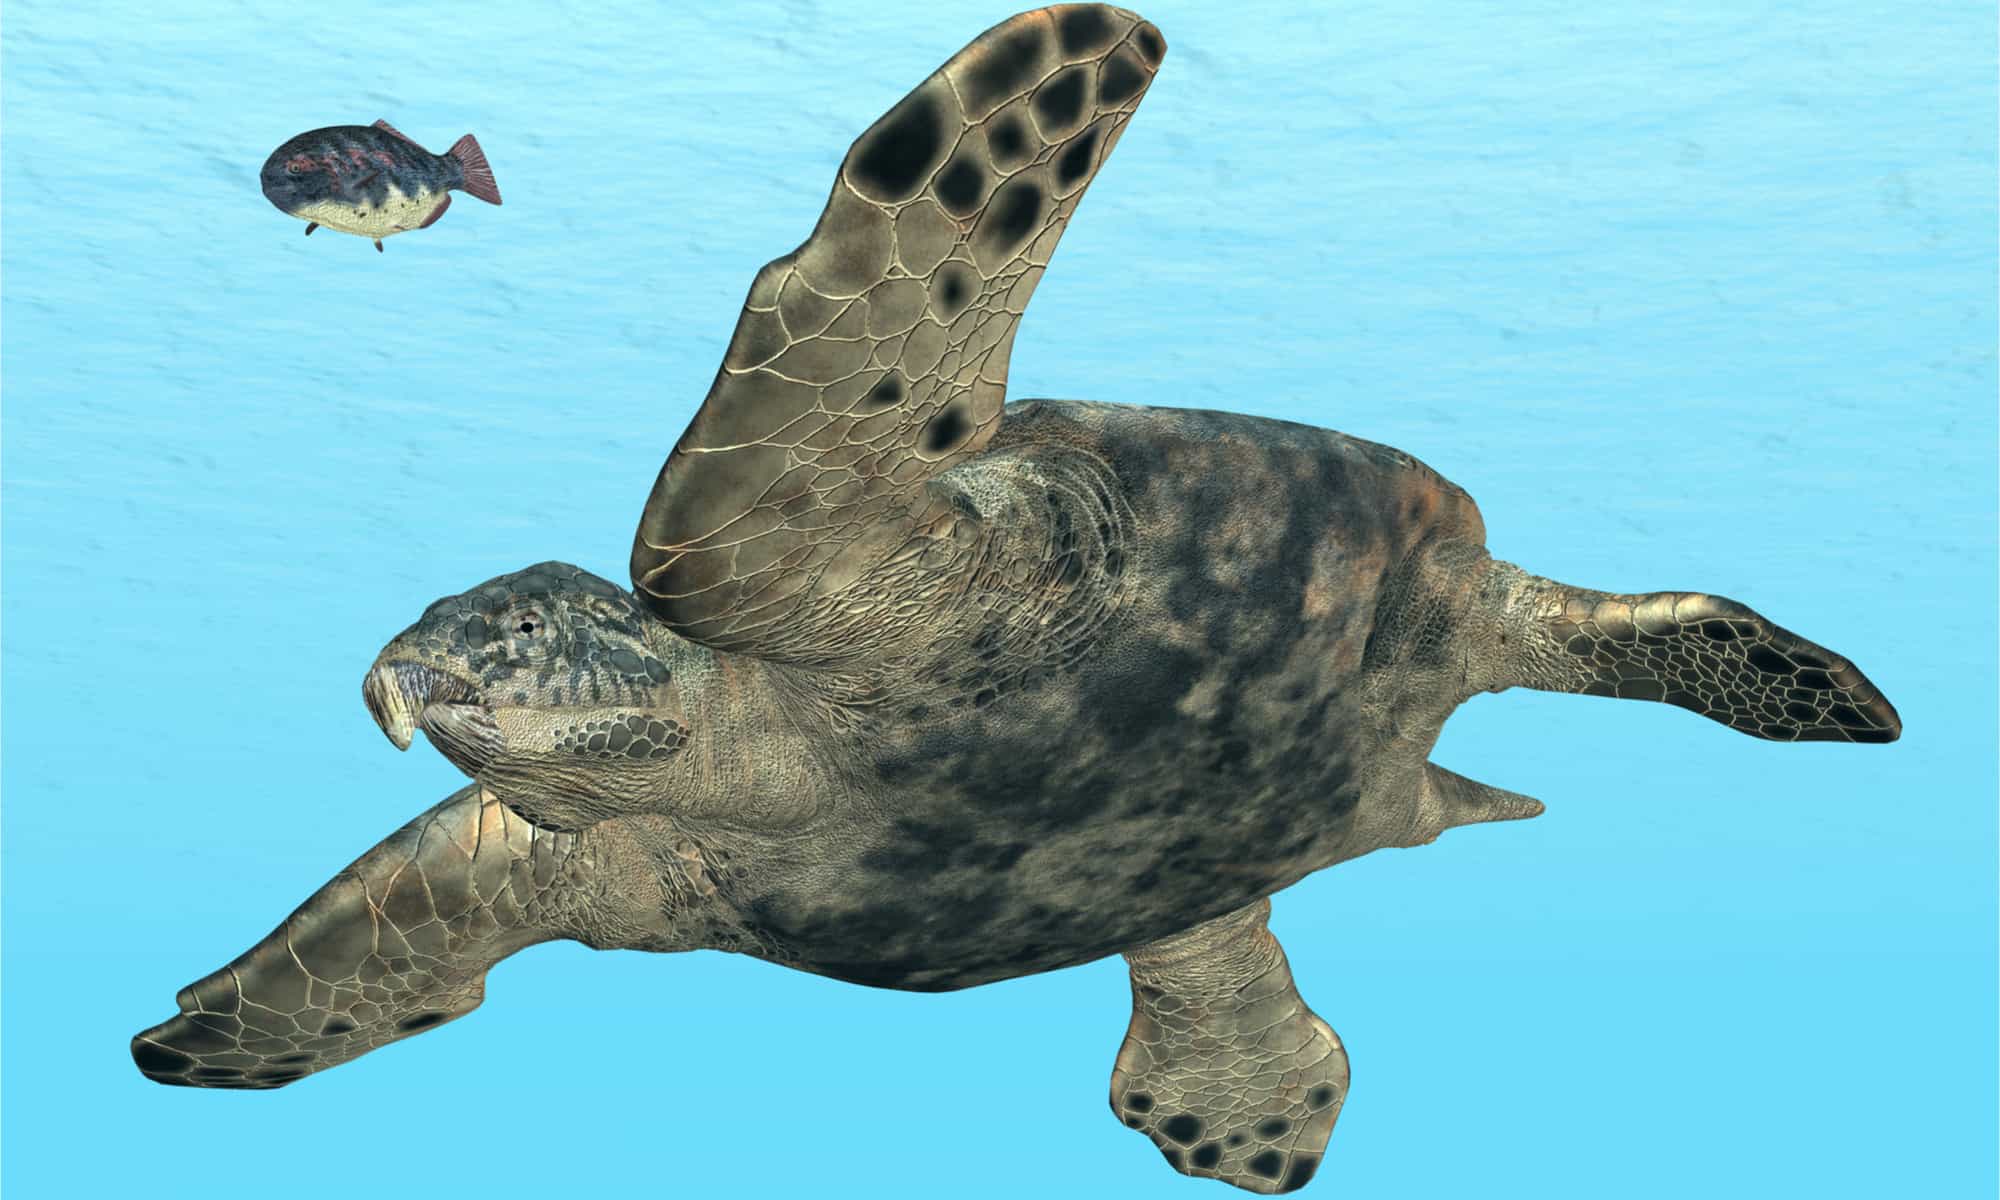 Le tartarughe marine erano rettili marini dell'era mesozoica.